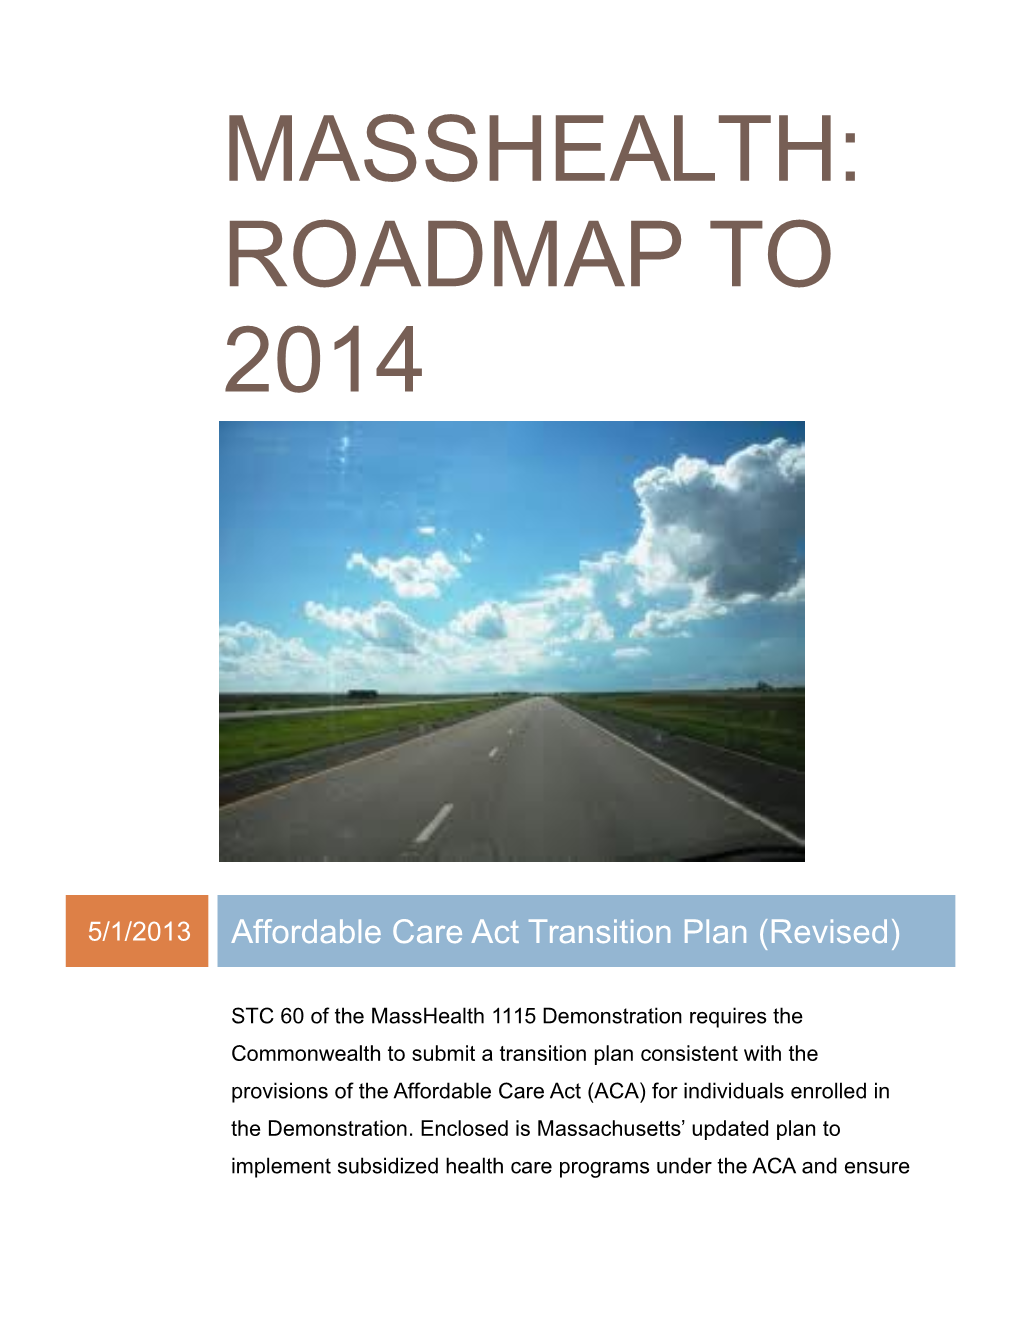 Masshealth: Roadmap to 2014